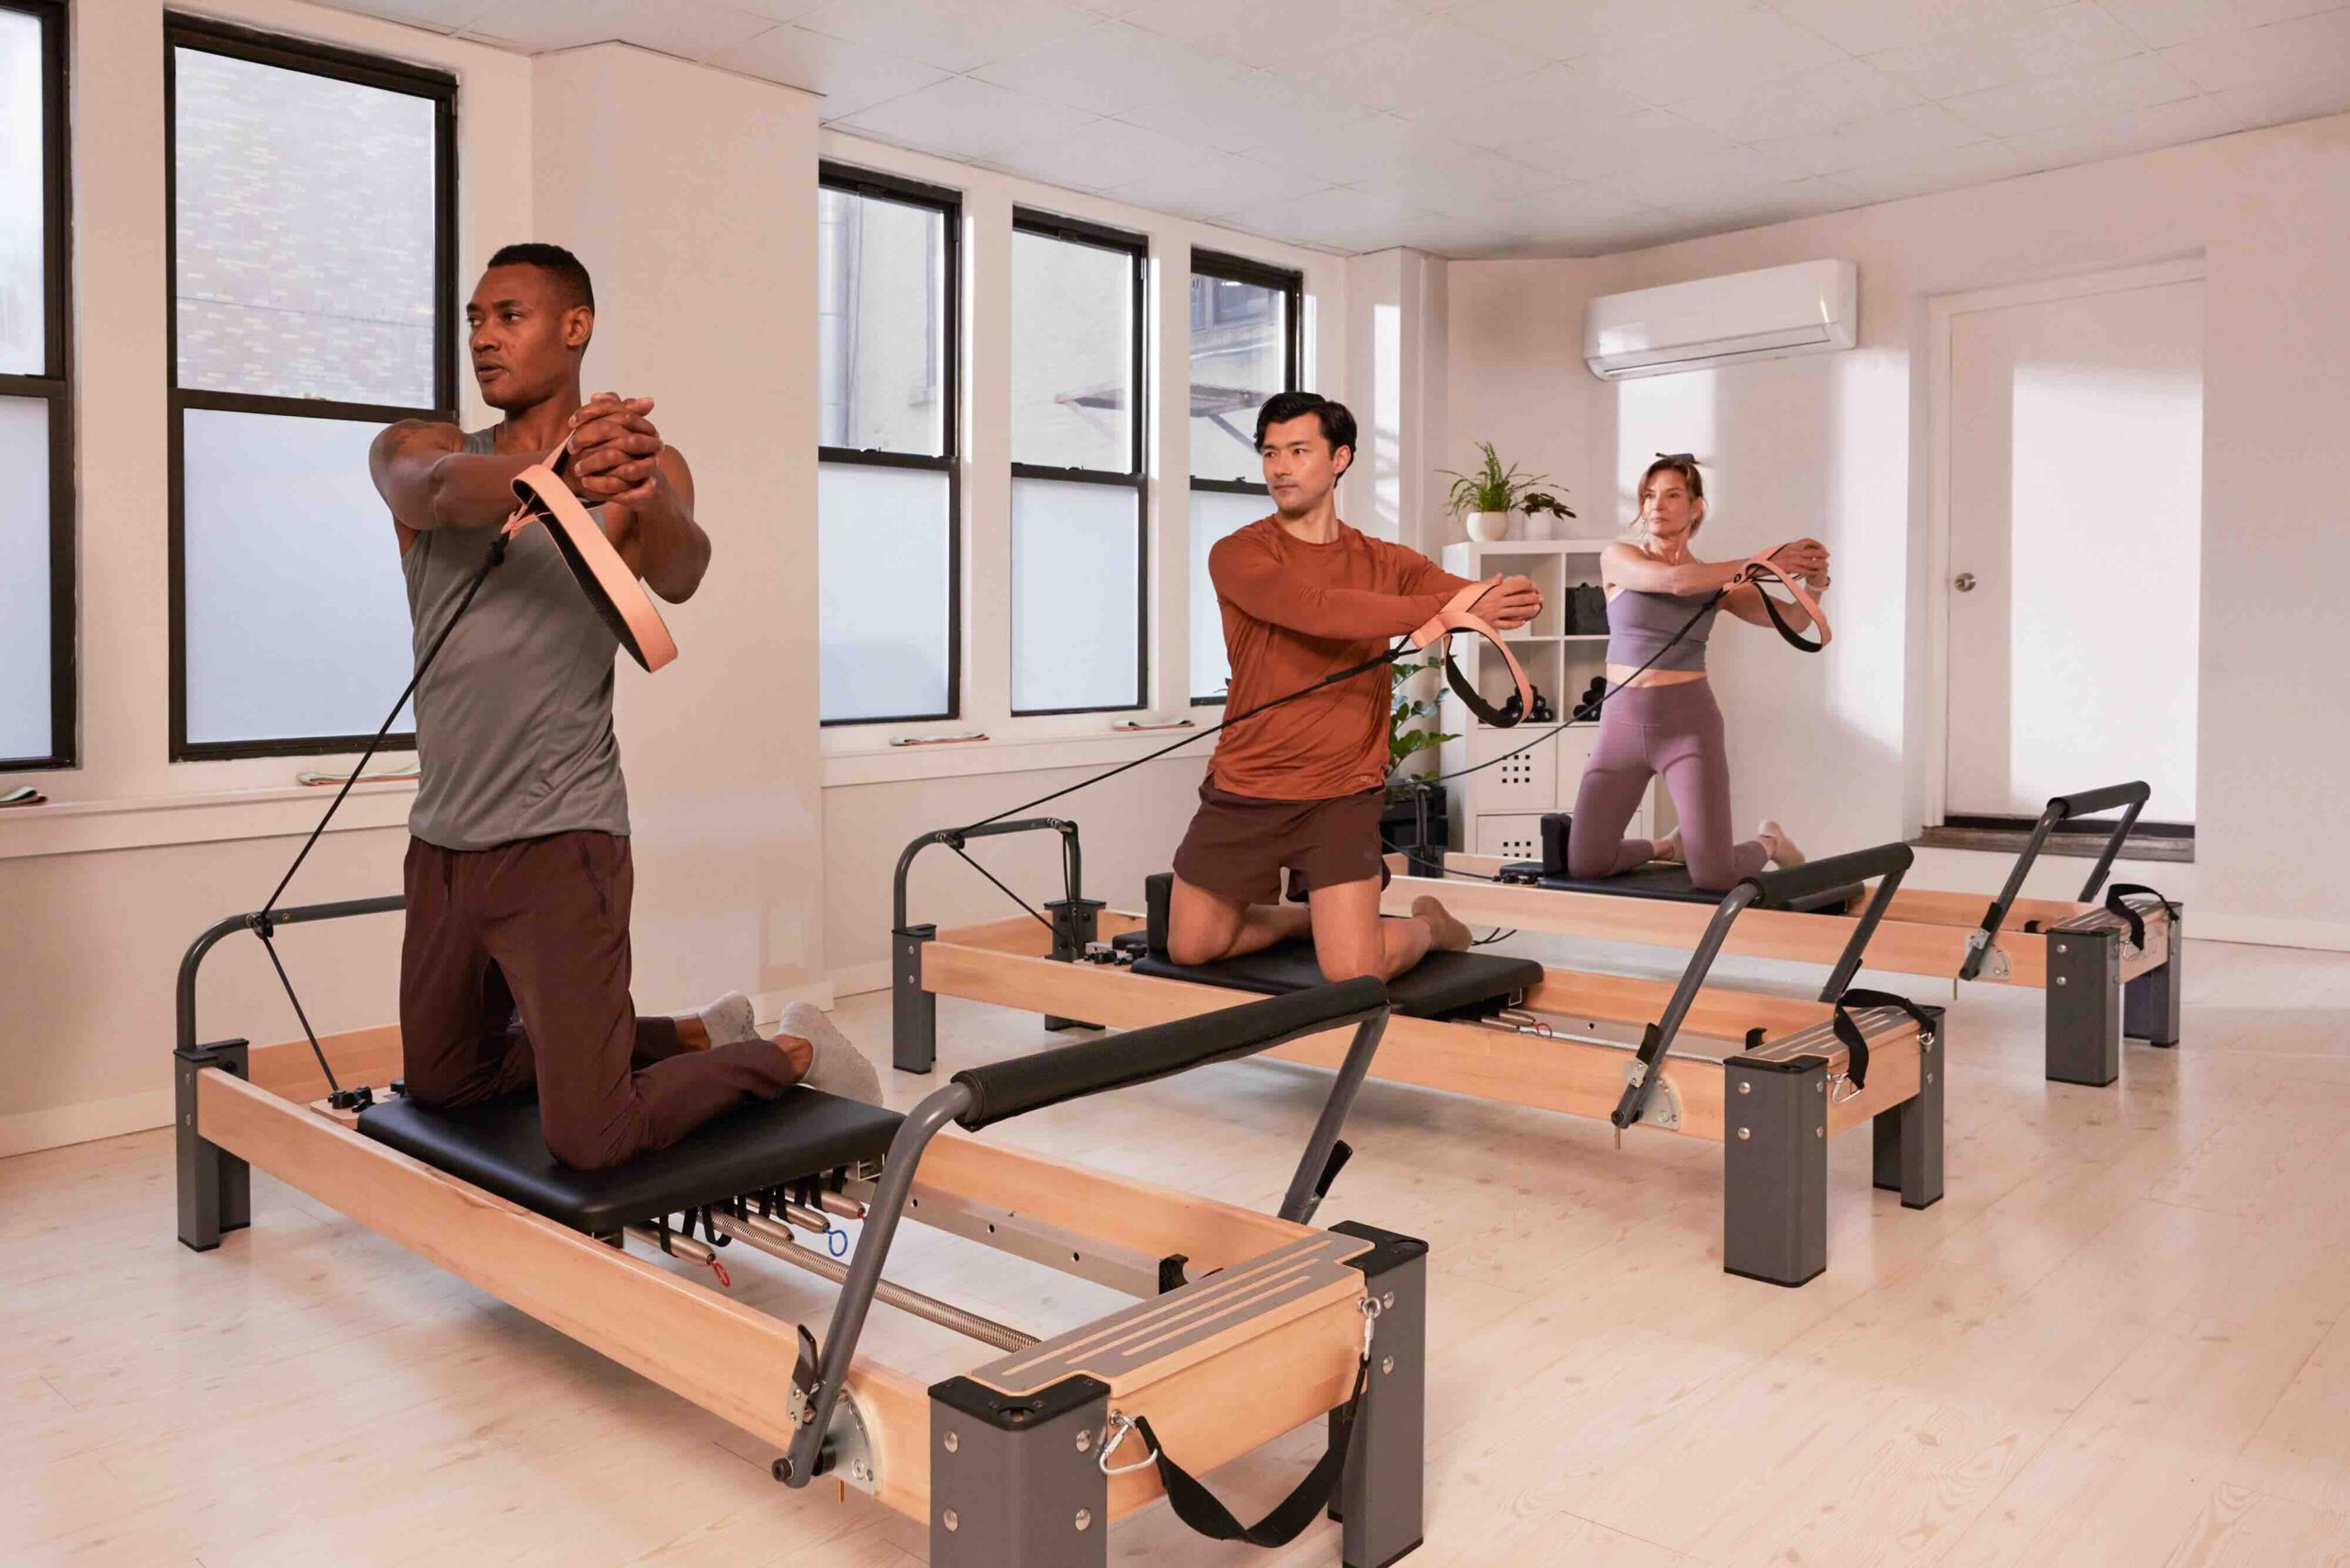 Pilates Workout Reformer: Pilates Mat Exercises: Beginner